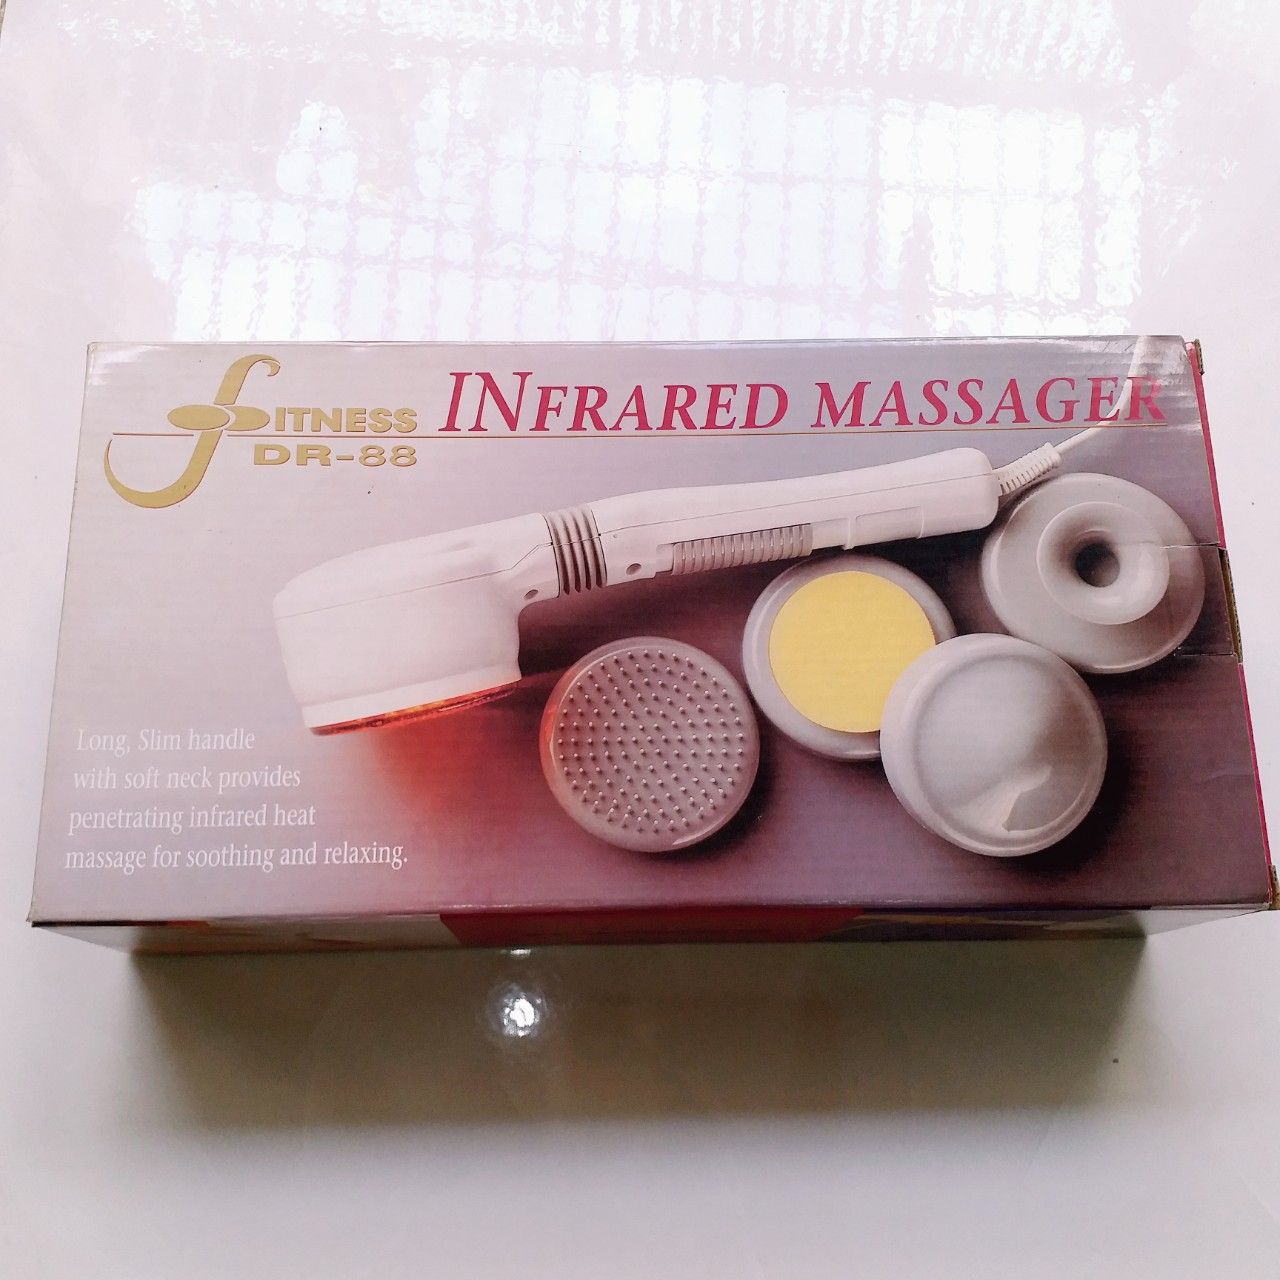 Máy Massage Mặt Có Rung, Hồng Ngoại - Máy Massage Ngực Fitness DR-88